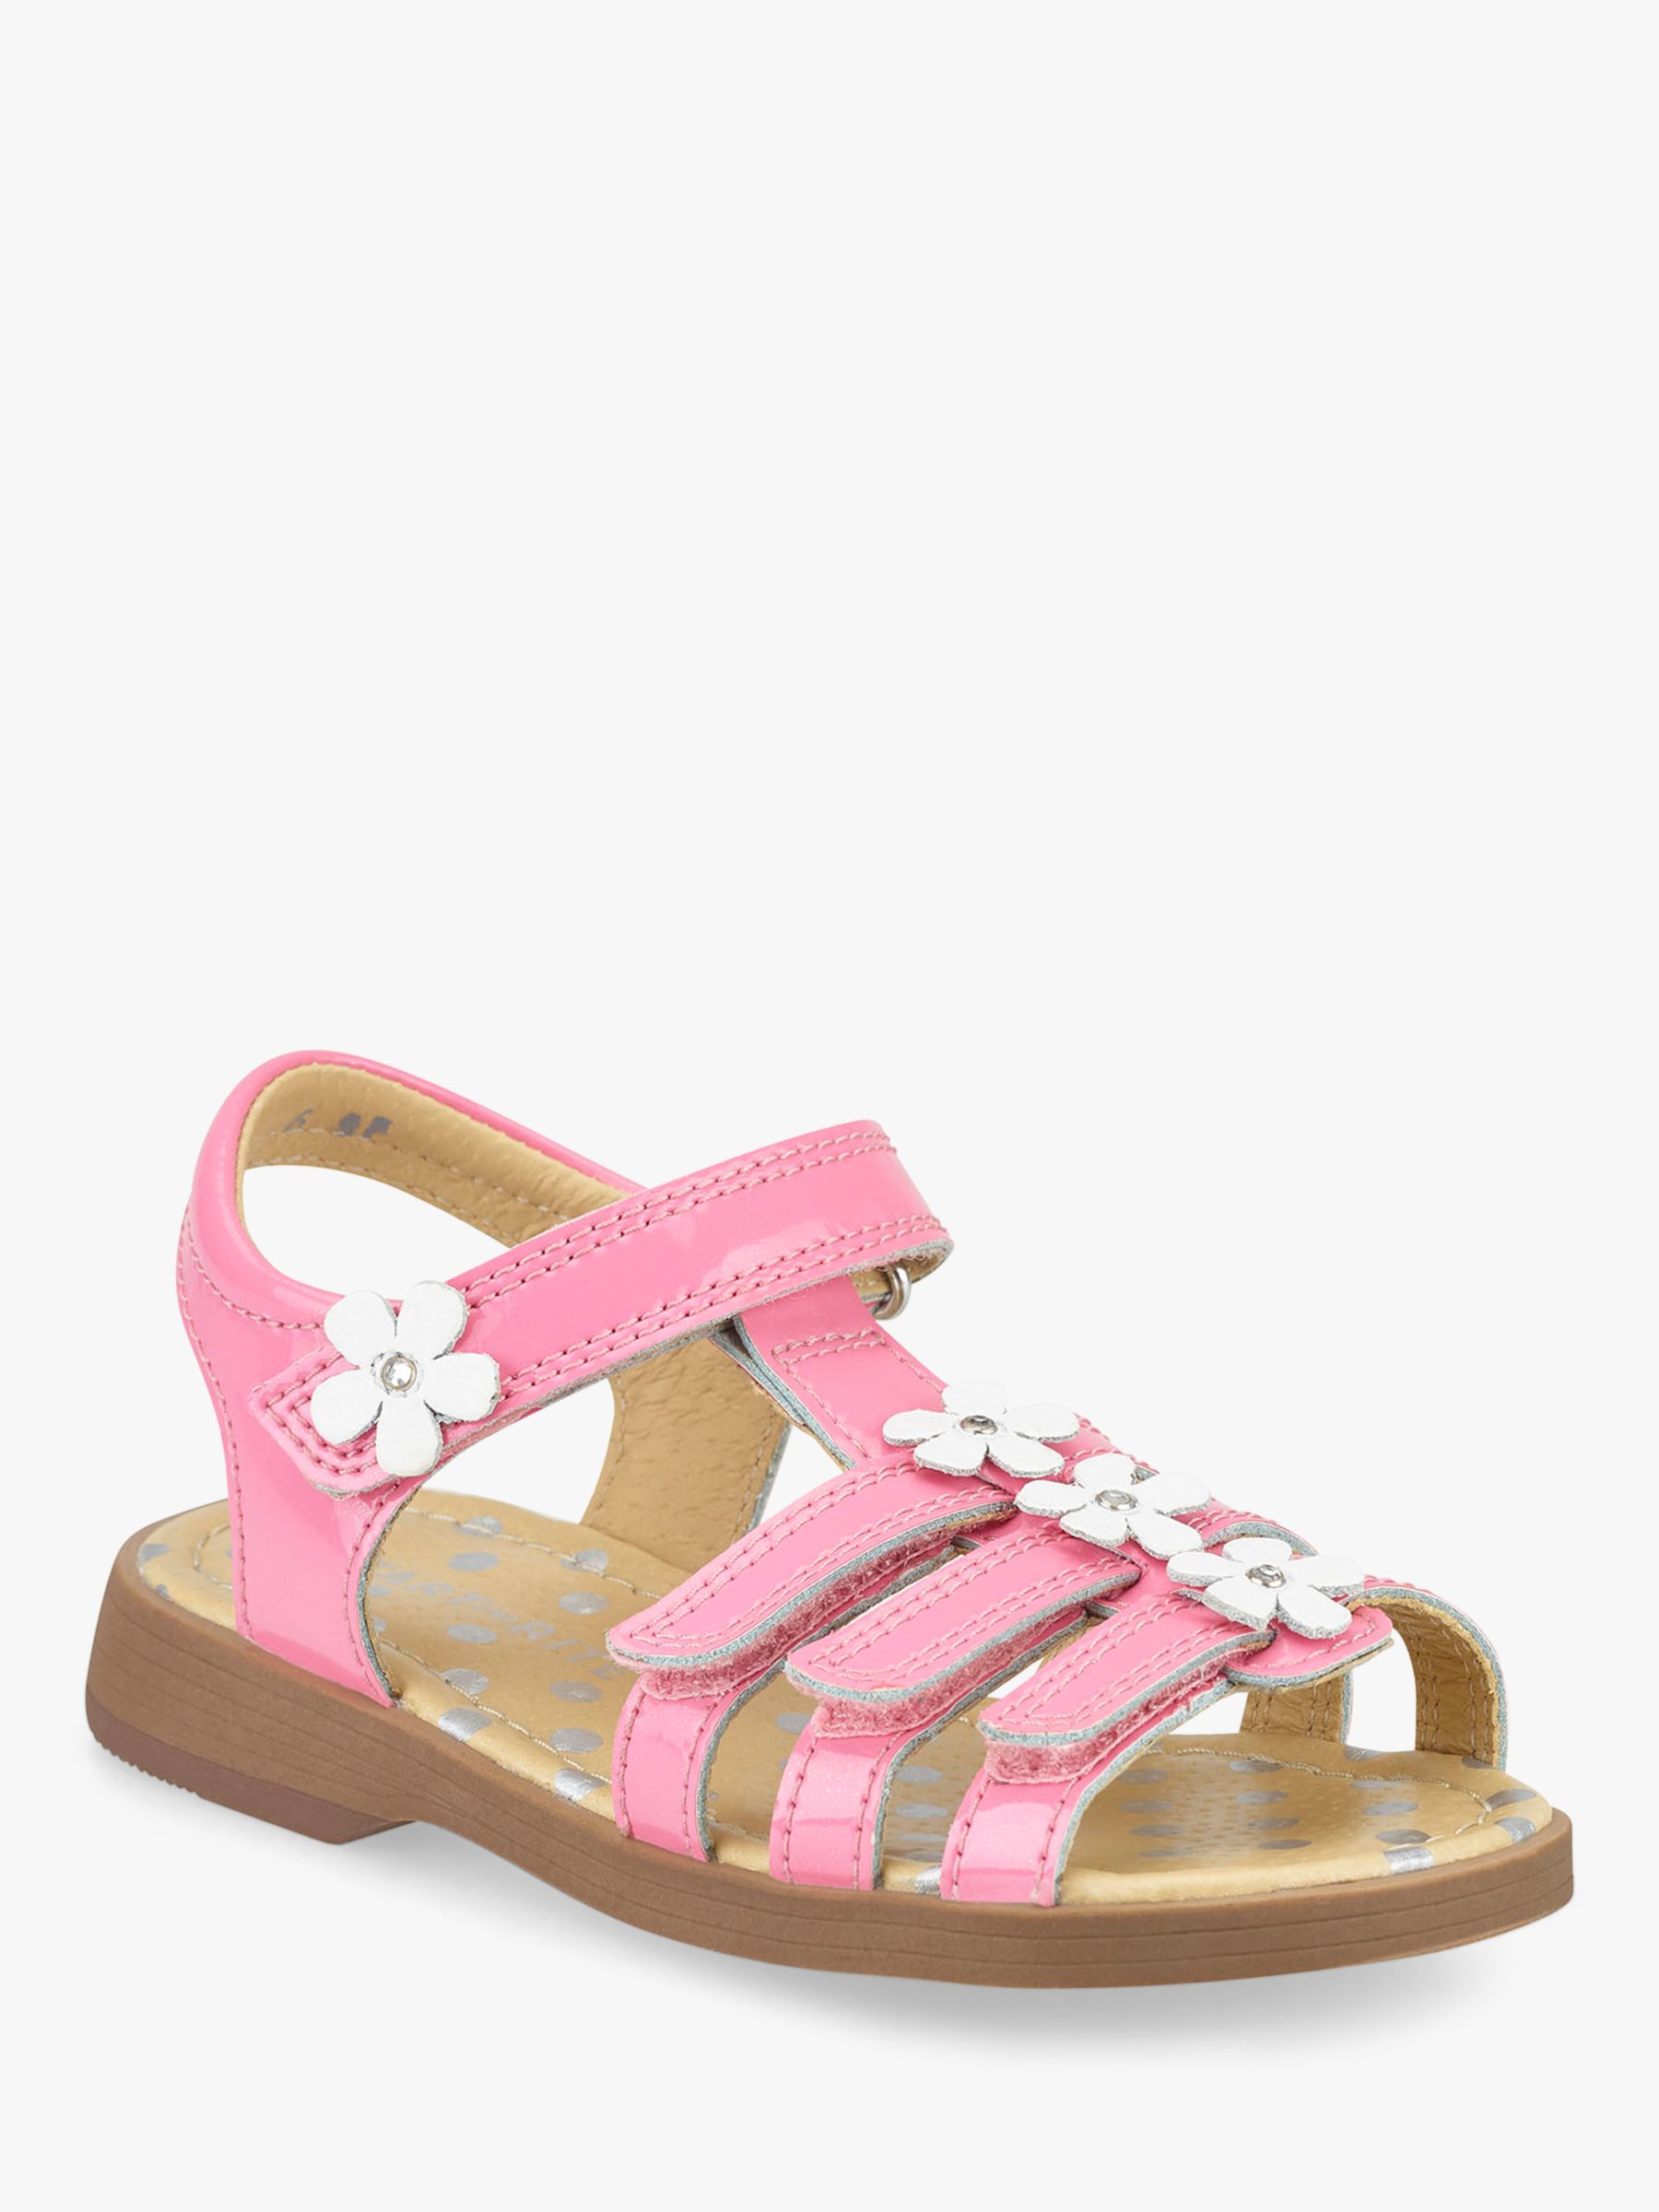 Start-rite Children's Picnic Sandals, Bright Pink Glitter